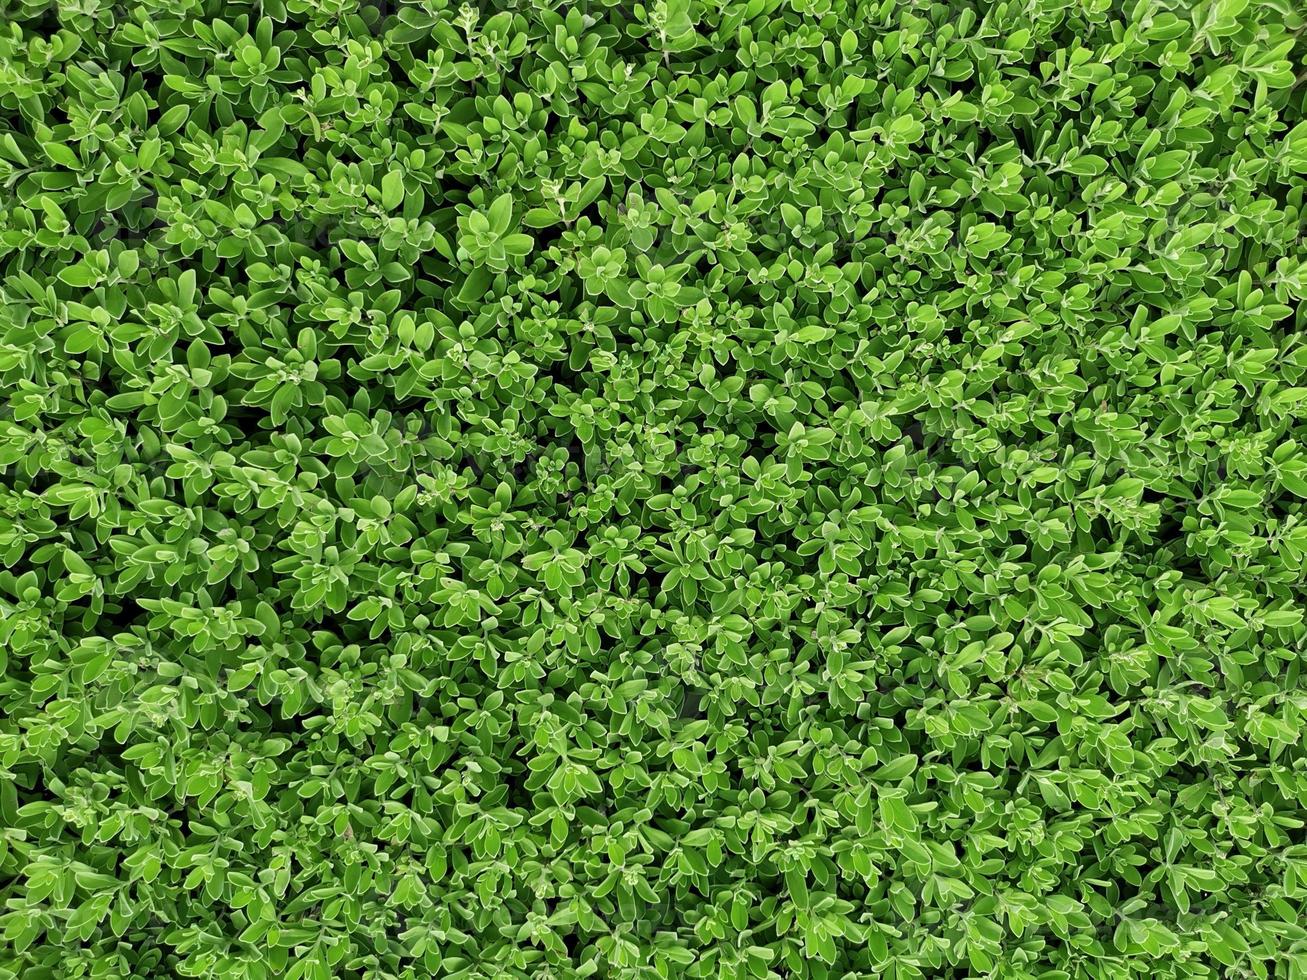 textura de parede de grama verde para design de pano de fundo e parede ecológica e cortada para obras de arte foto